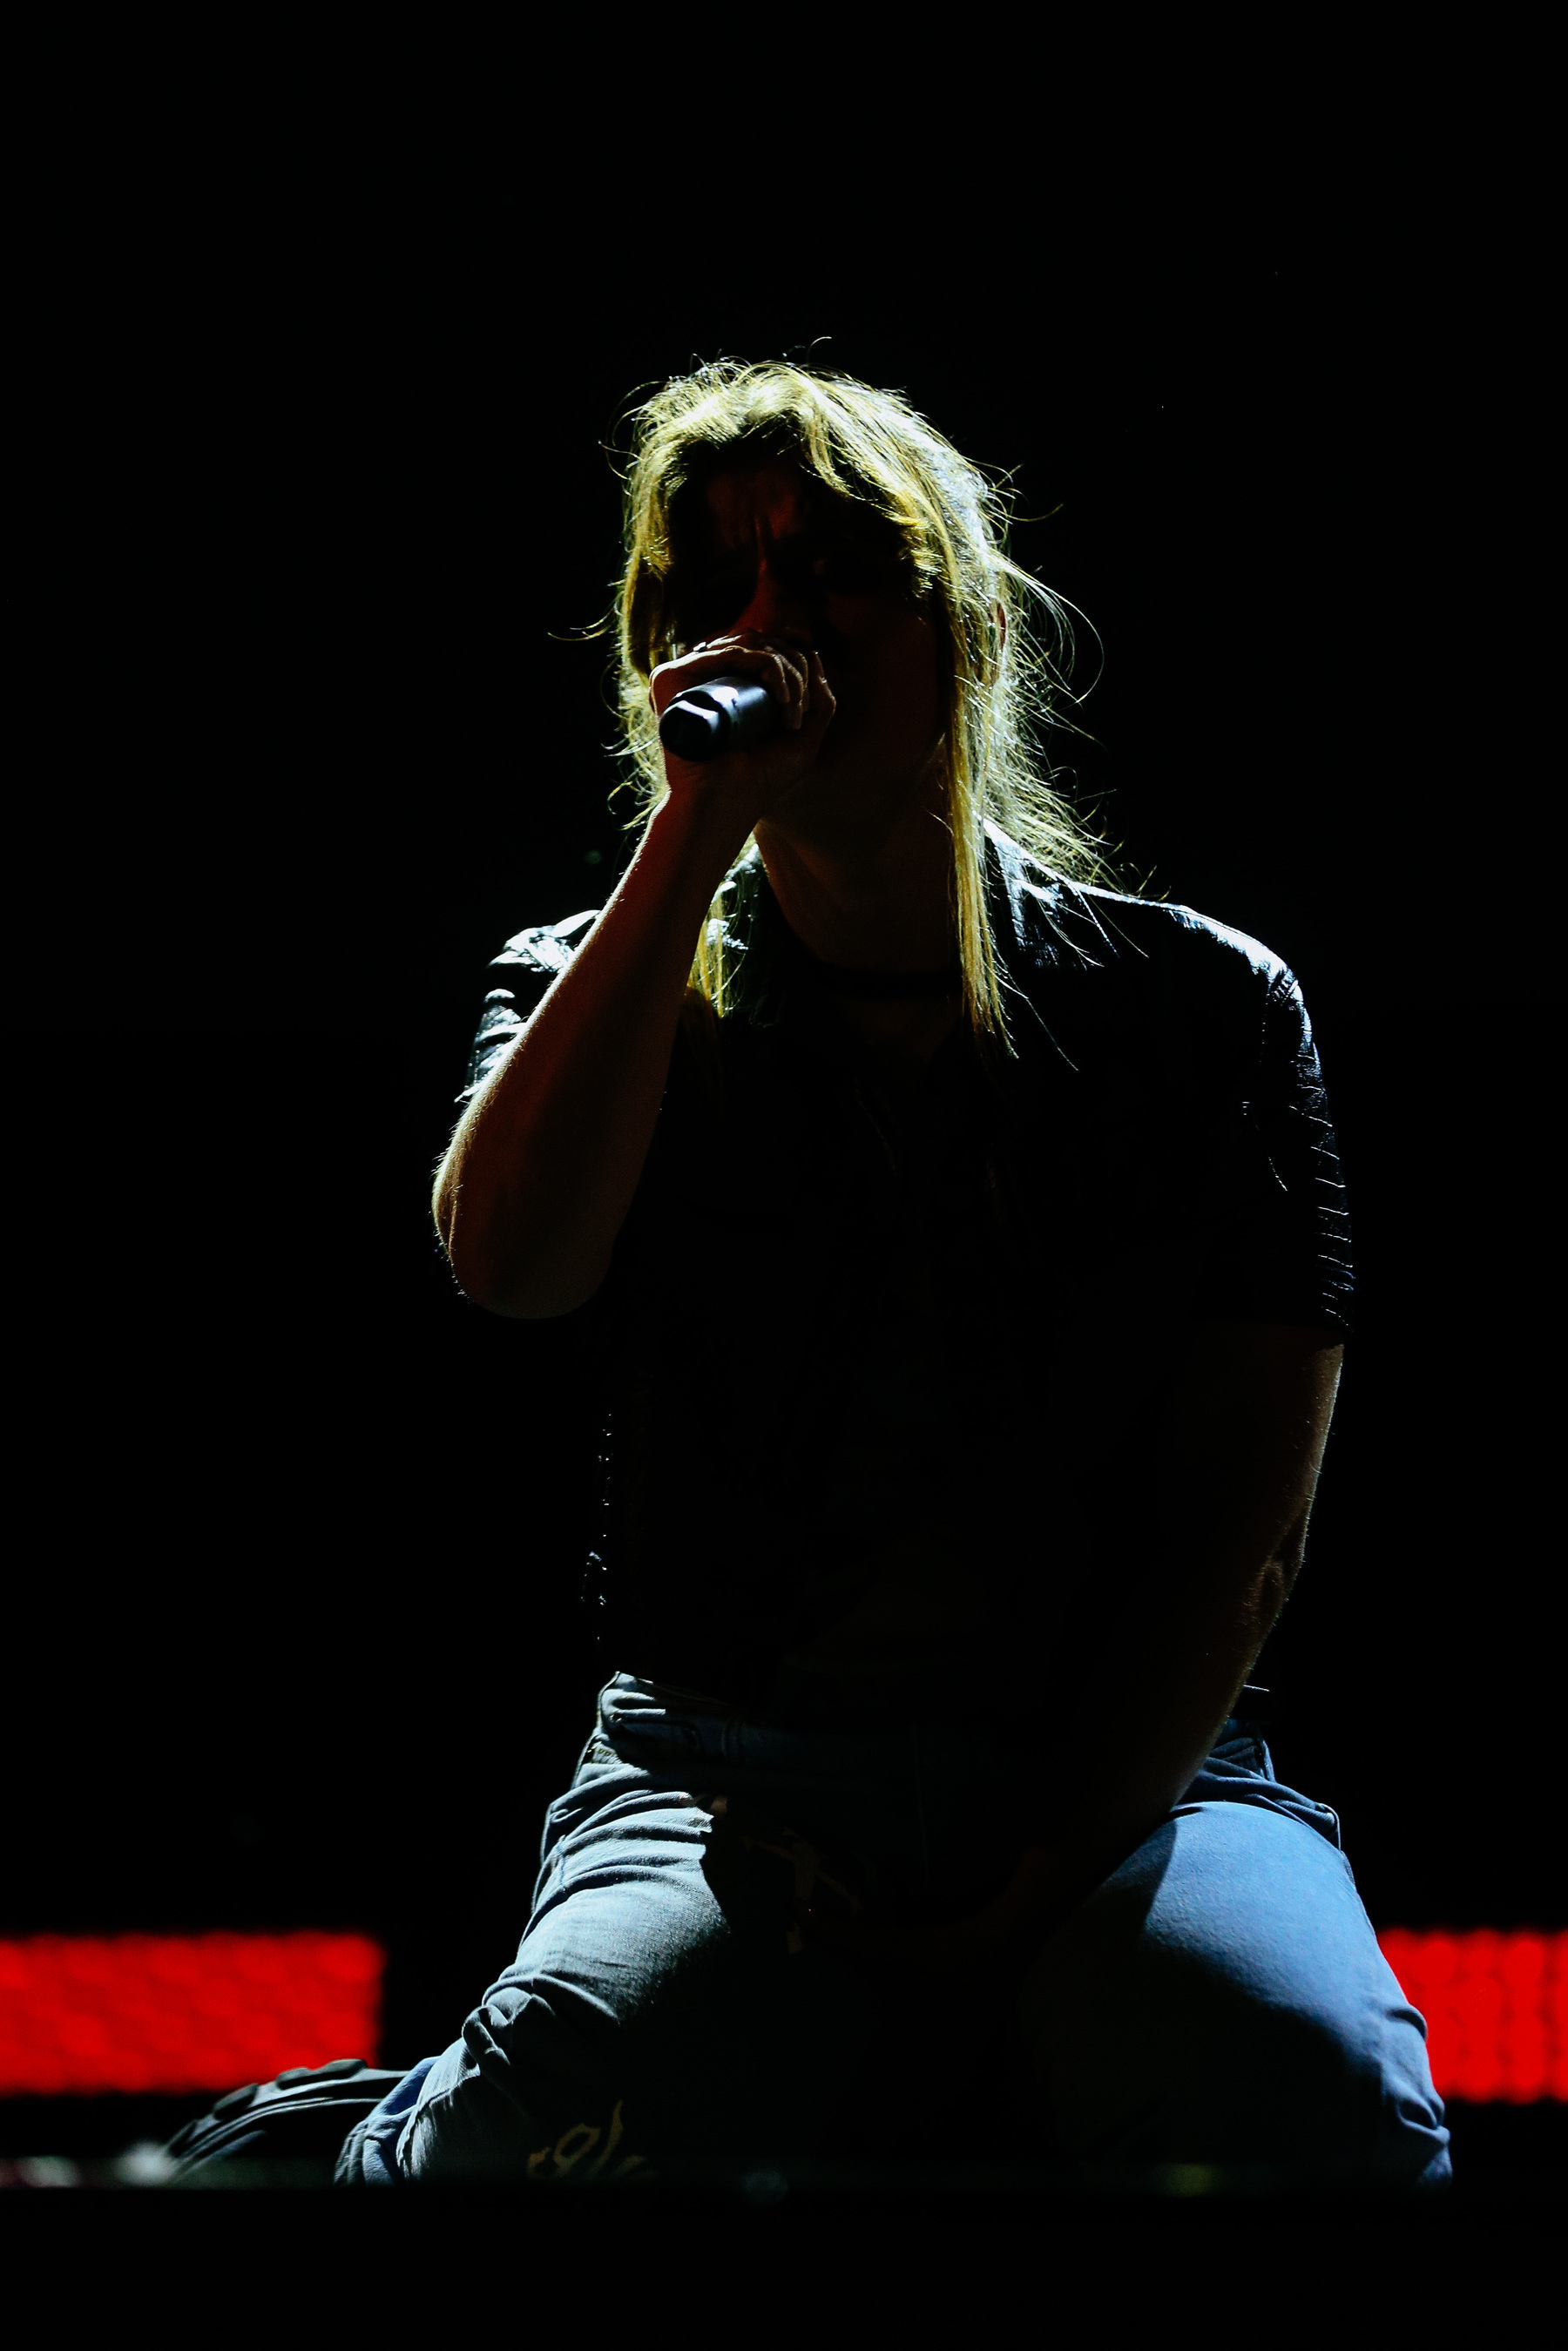 A singer kneeling on stage 